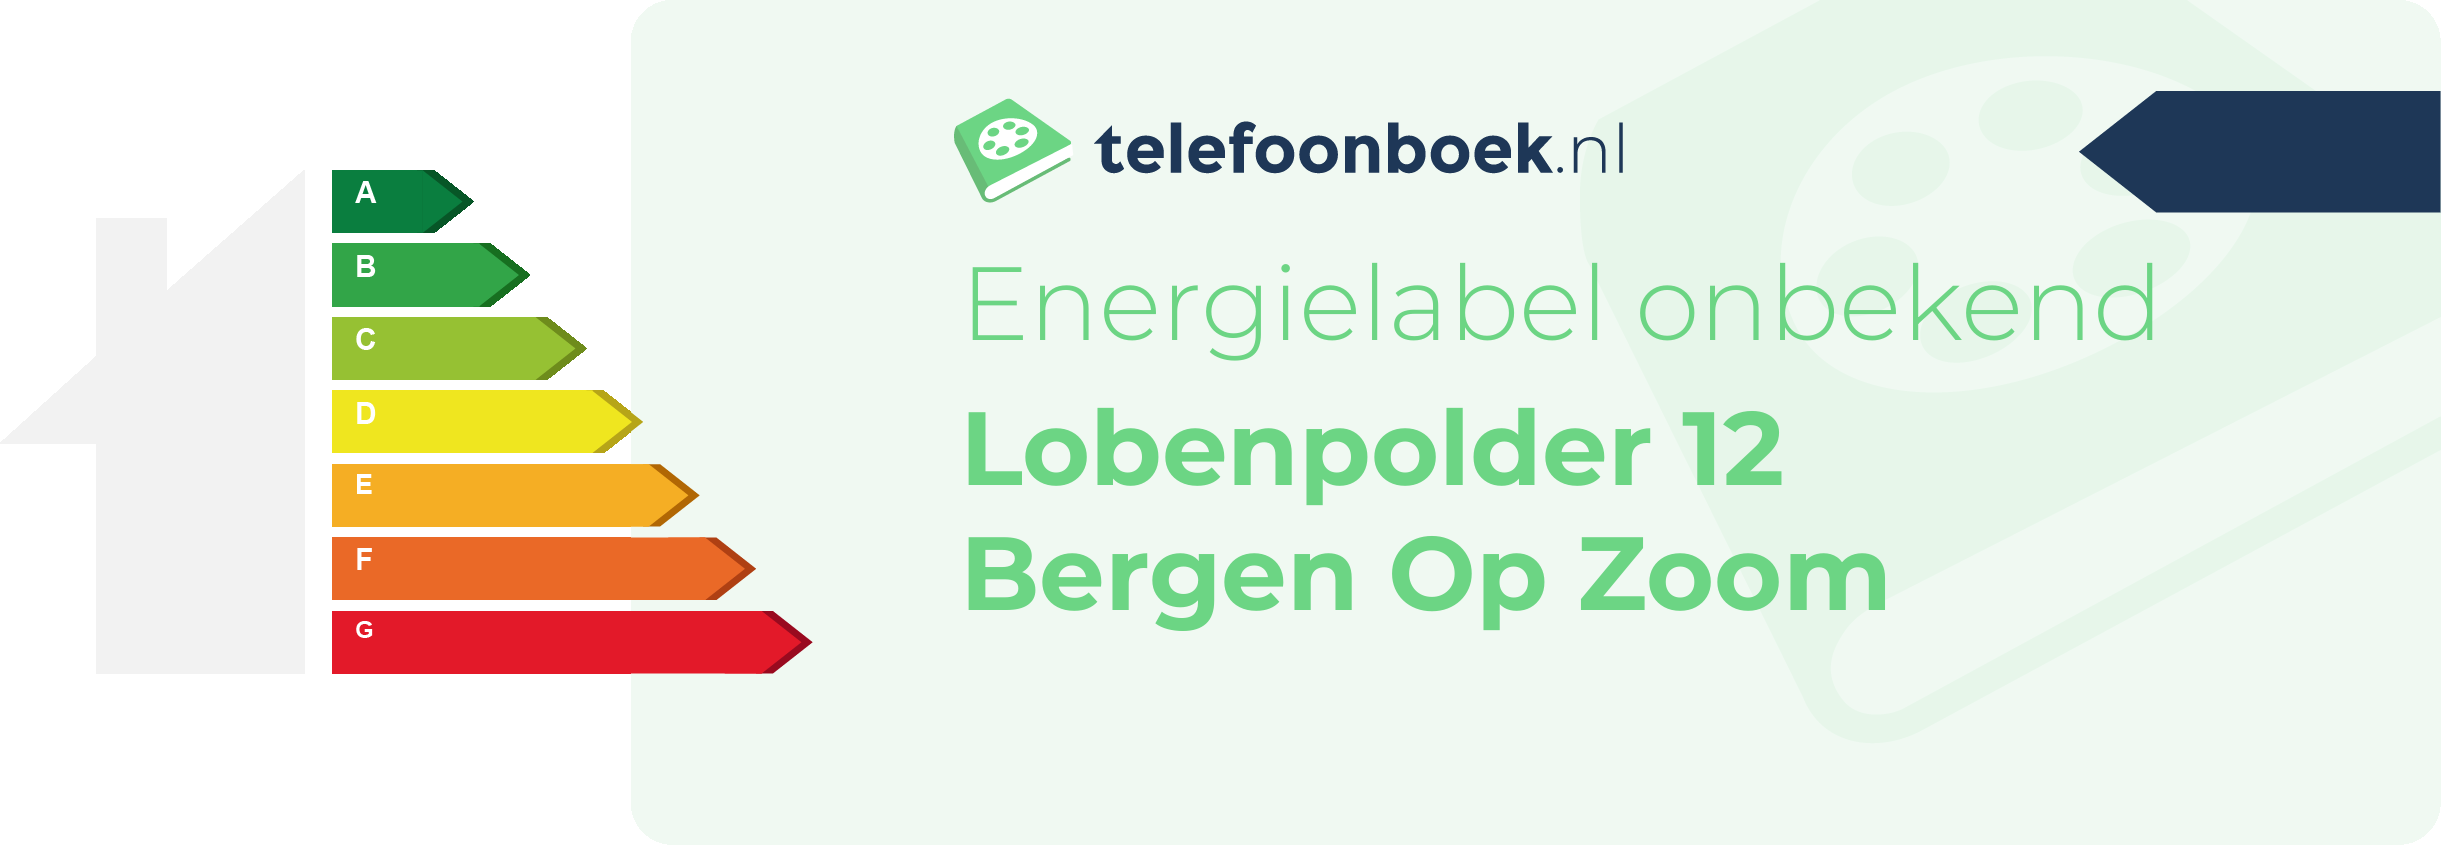 Energielabel Lobenpolder 12 Bergen Op Zoom